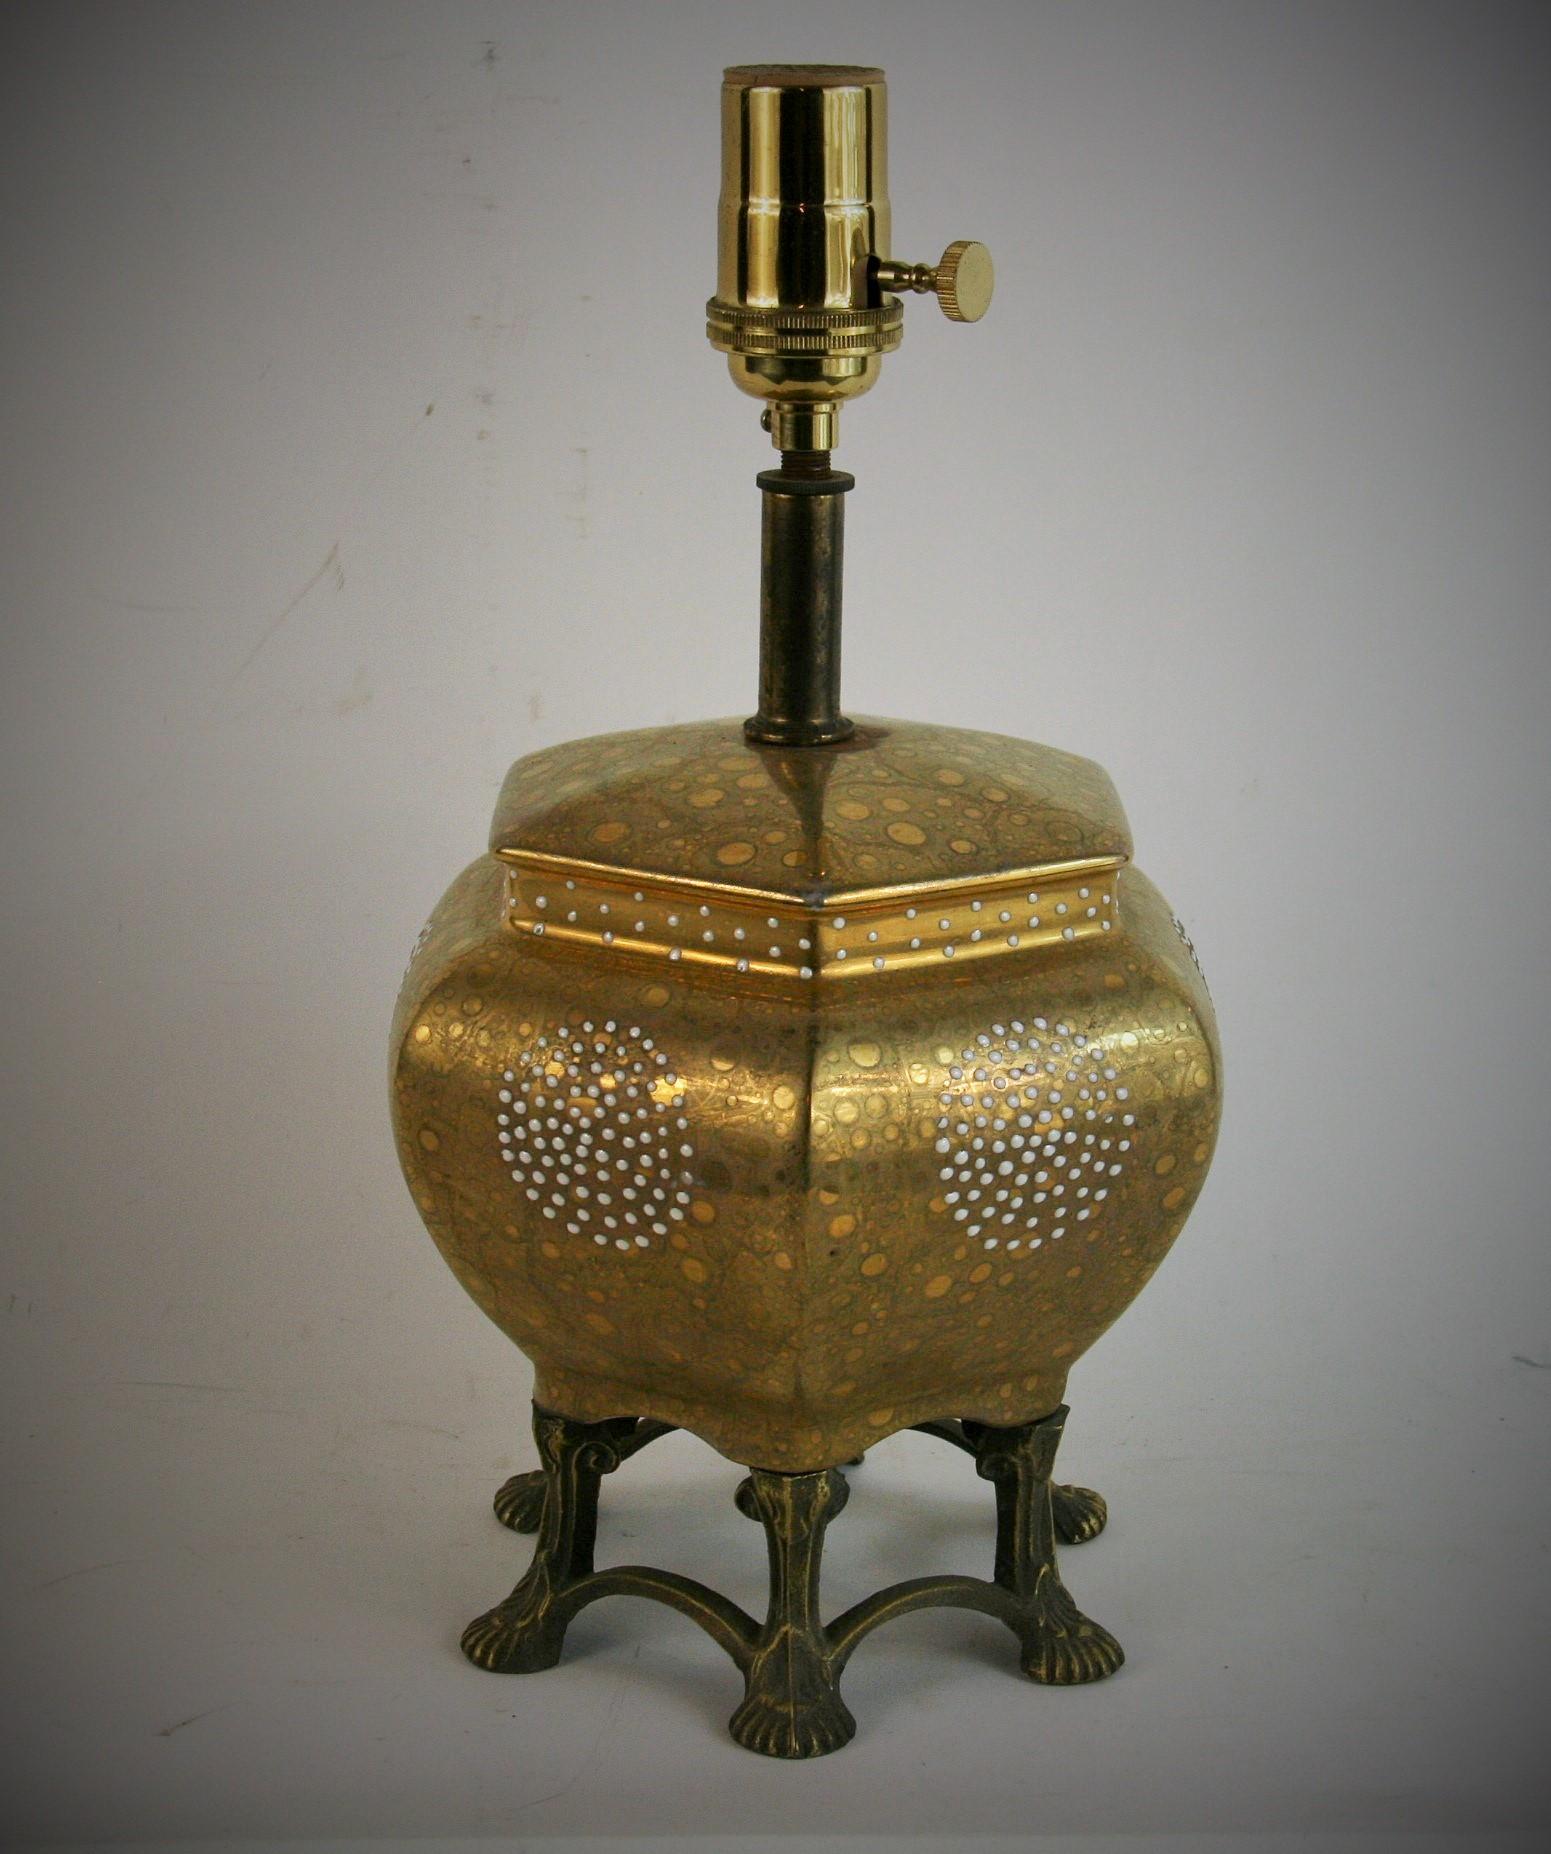 1596  Milieu du siècle  lampe en porcelaine avec des cercles de moriage et une base en métal.
Rewired 
Fonctionne avec une ampoule de 60 watts de type Edison